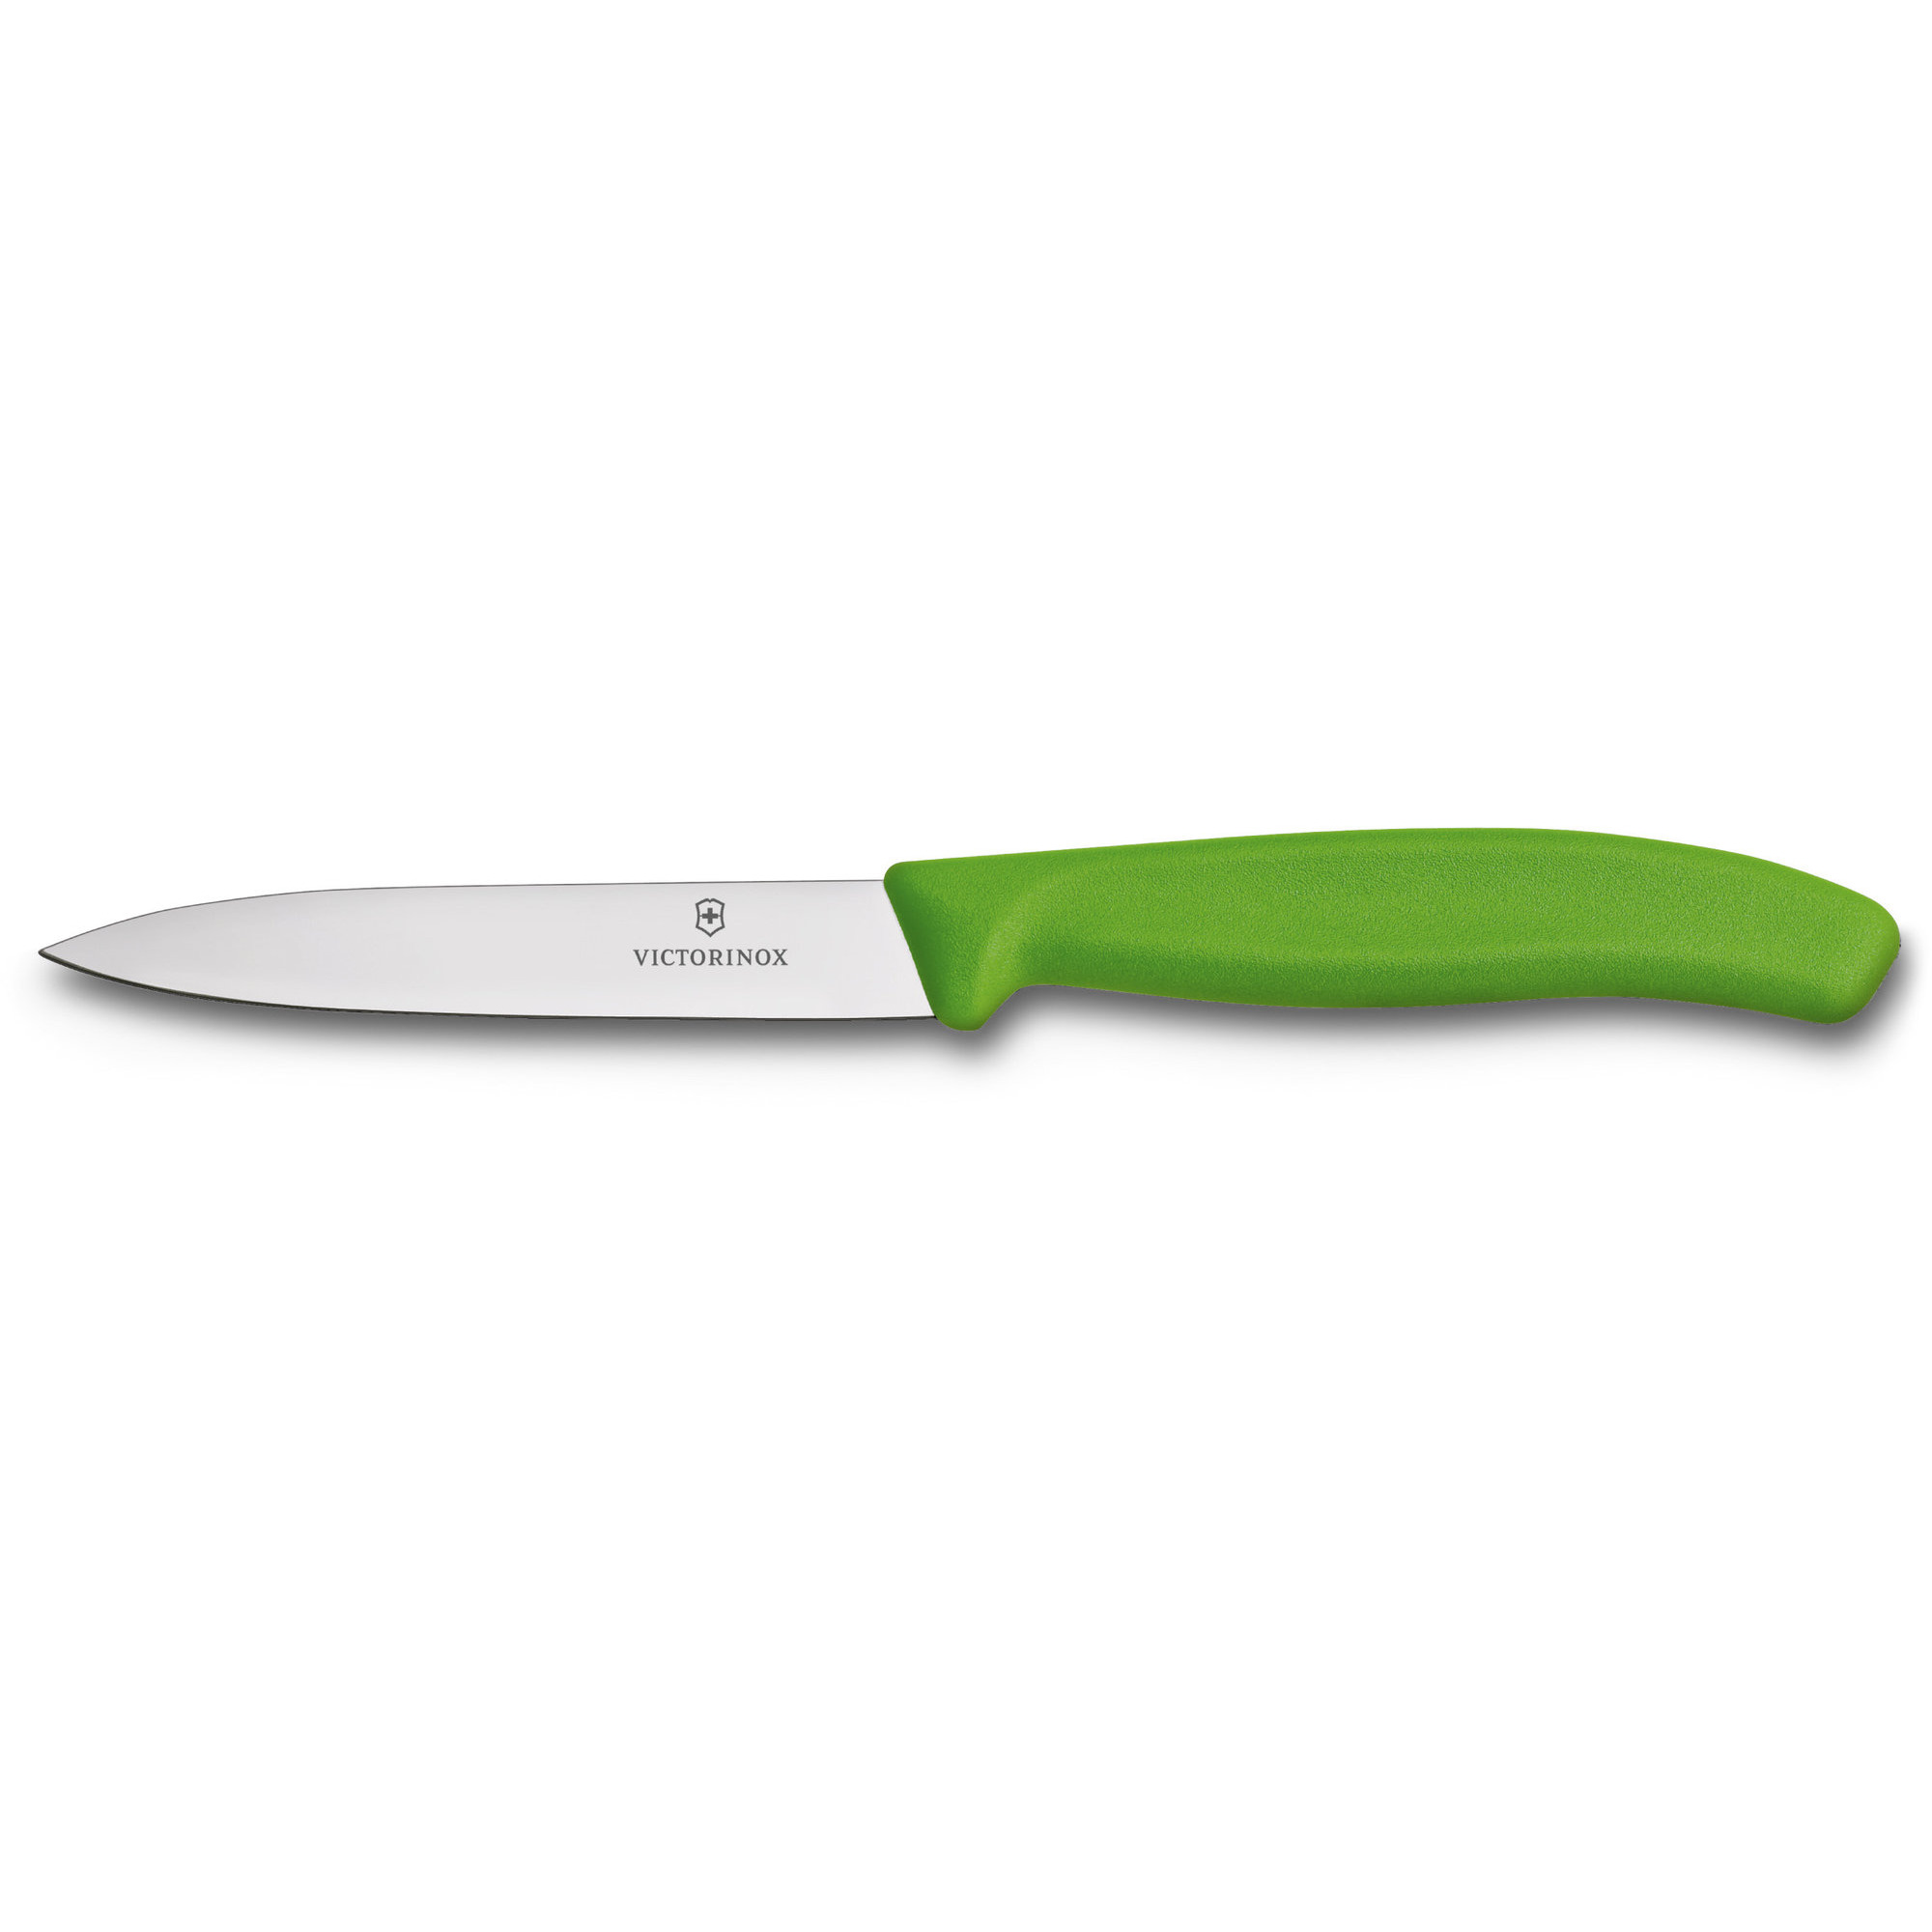 Victorinox Grøntsags- og skrællekniv med nylonhåndtag i grøn, 10 cm.